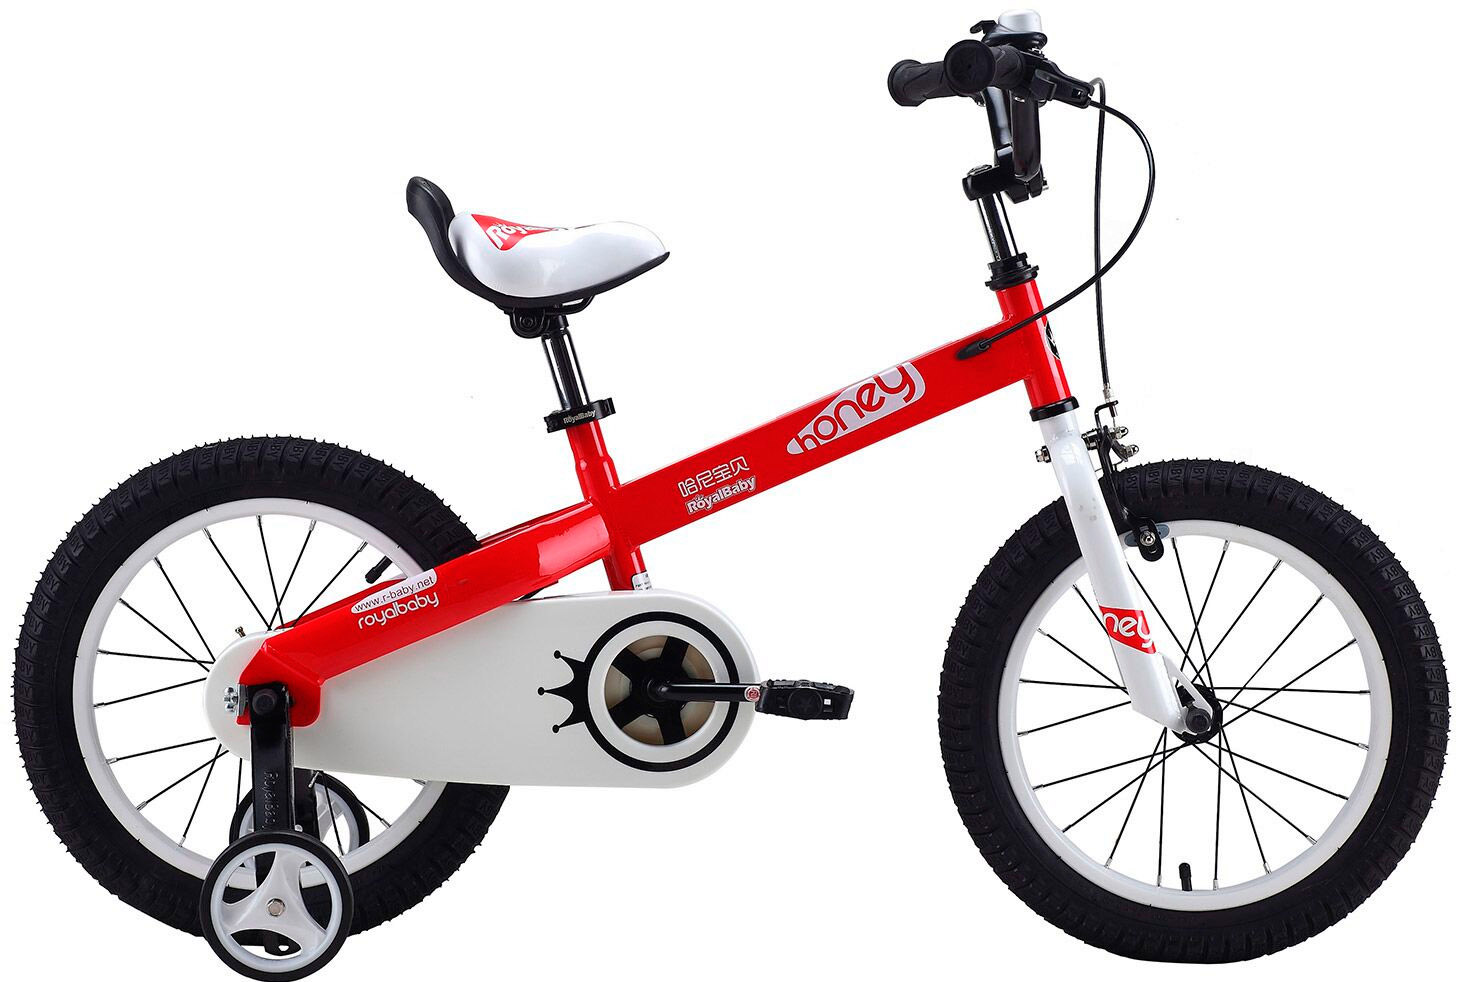  Отзывы о Детском велосипеде Royal Baby Honey Steel 12 (2020) 2020